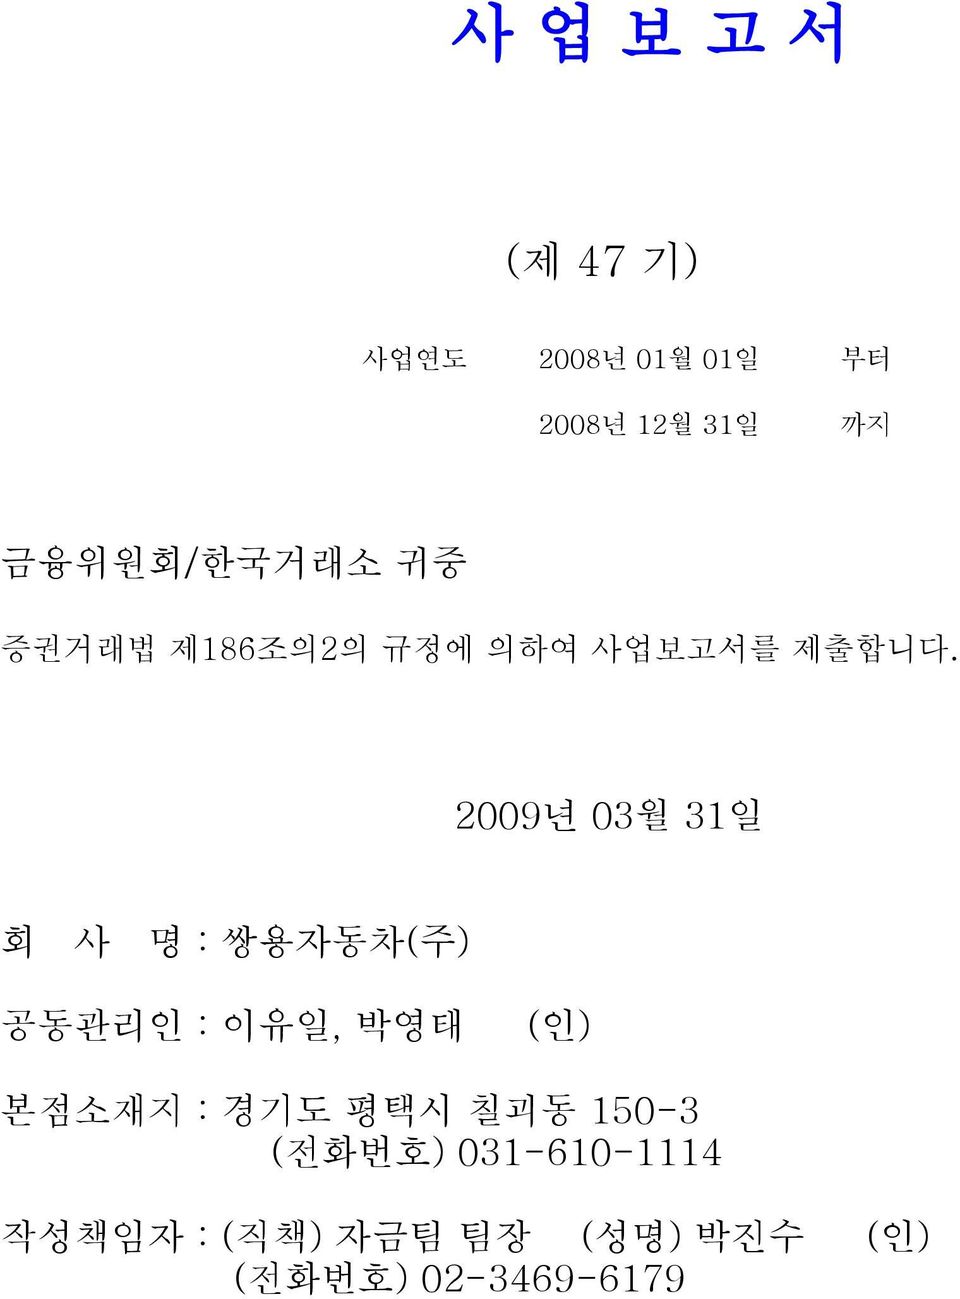 2009년 03월 31일 회 사 명 : 쌍용자동차(주) 공동관리인 : 이유일, 박영태 (인) 본점소재지 : 경기도